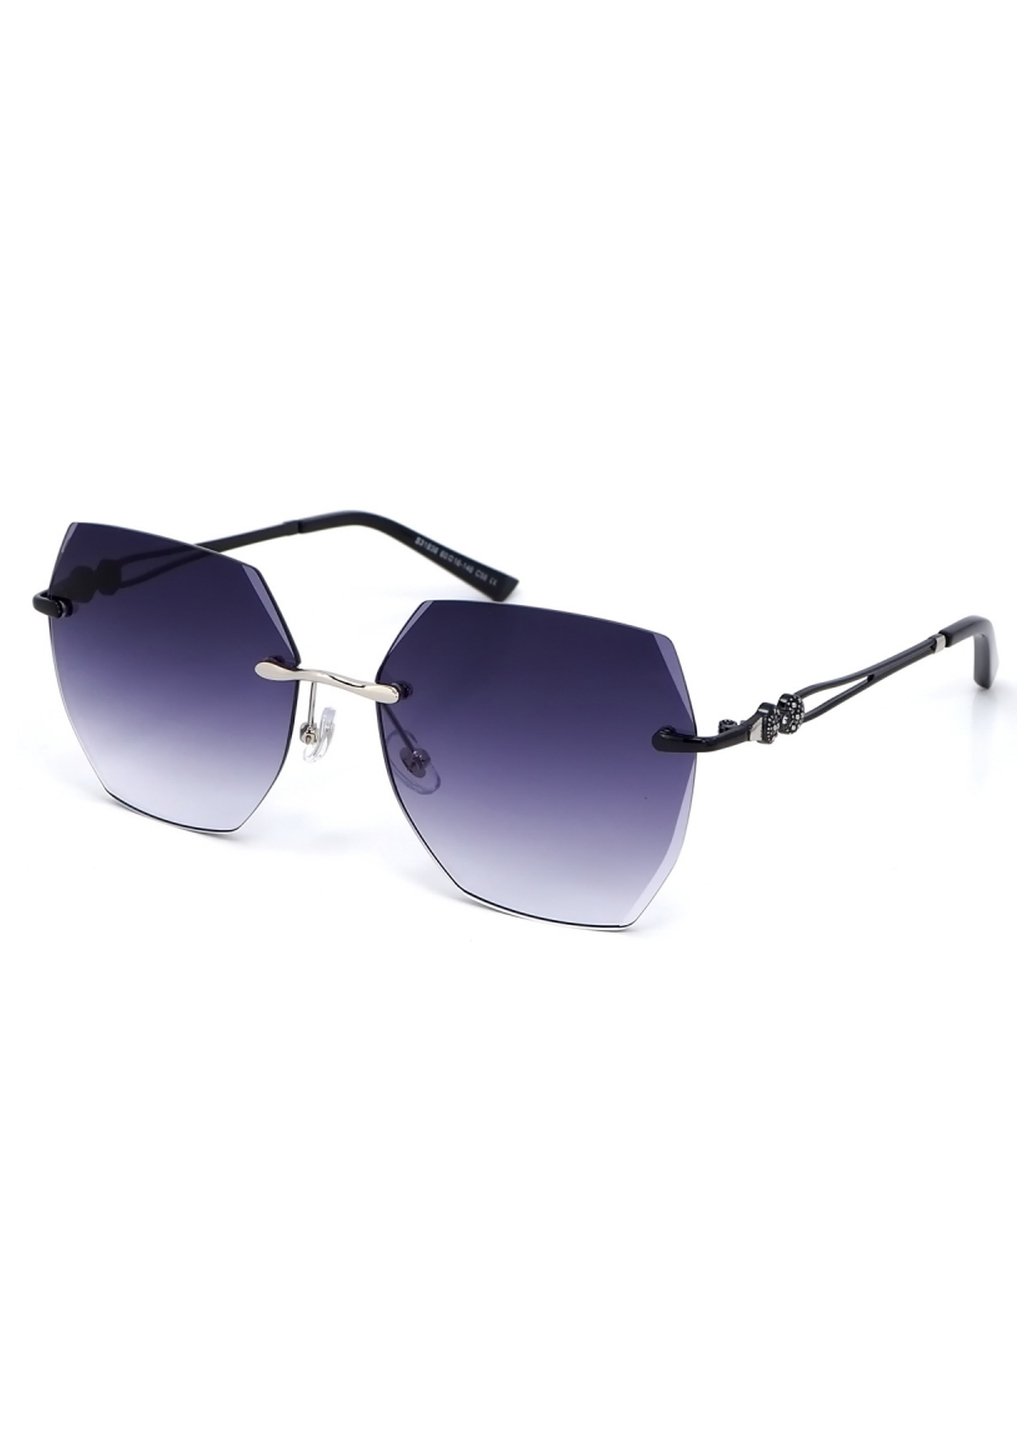 Купить Женские солнцезащитные очки Merlini с поляризацией S31836 117095 - Черный в интернет-магазине